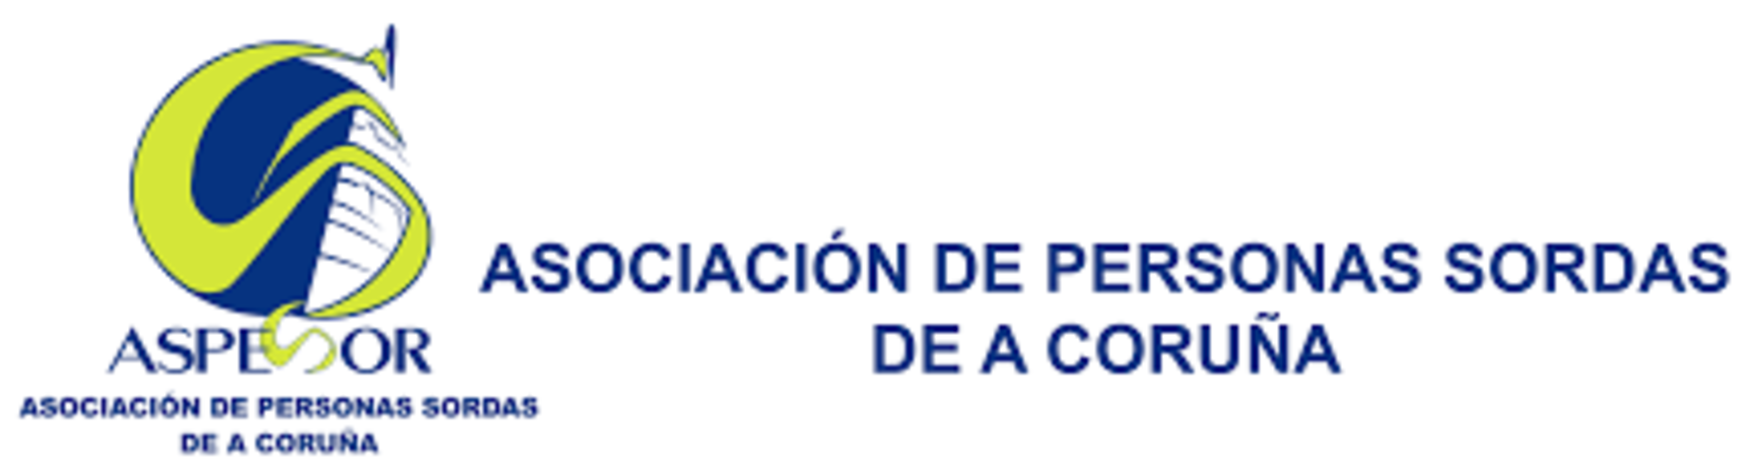 Logotipo de la asociación que propone esta inversión para la ciudad